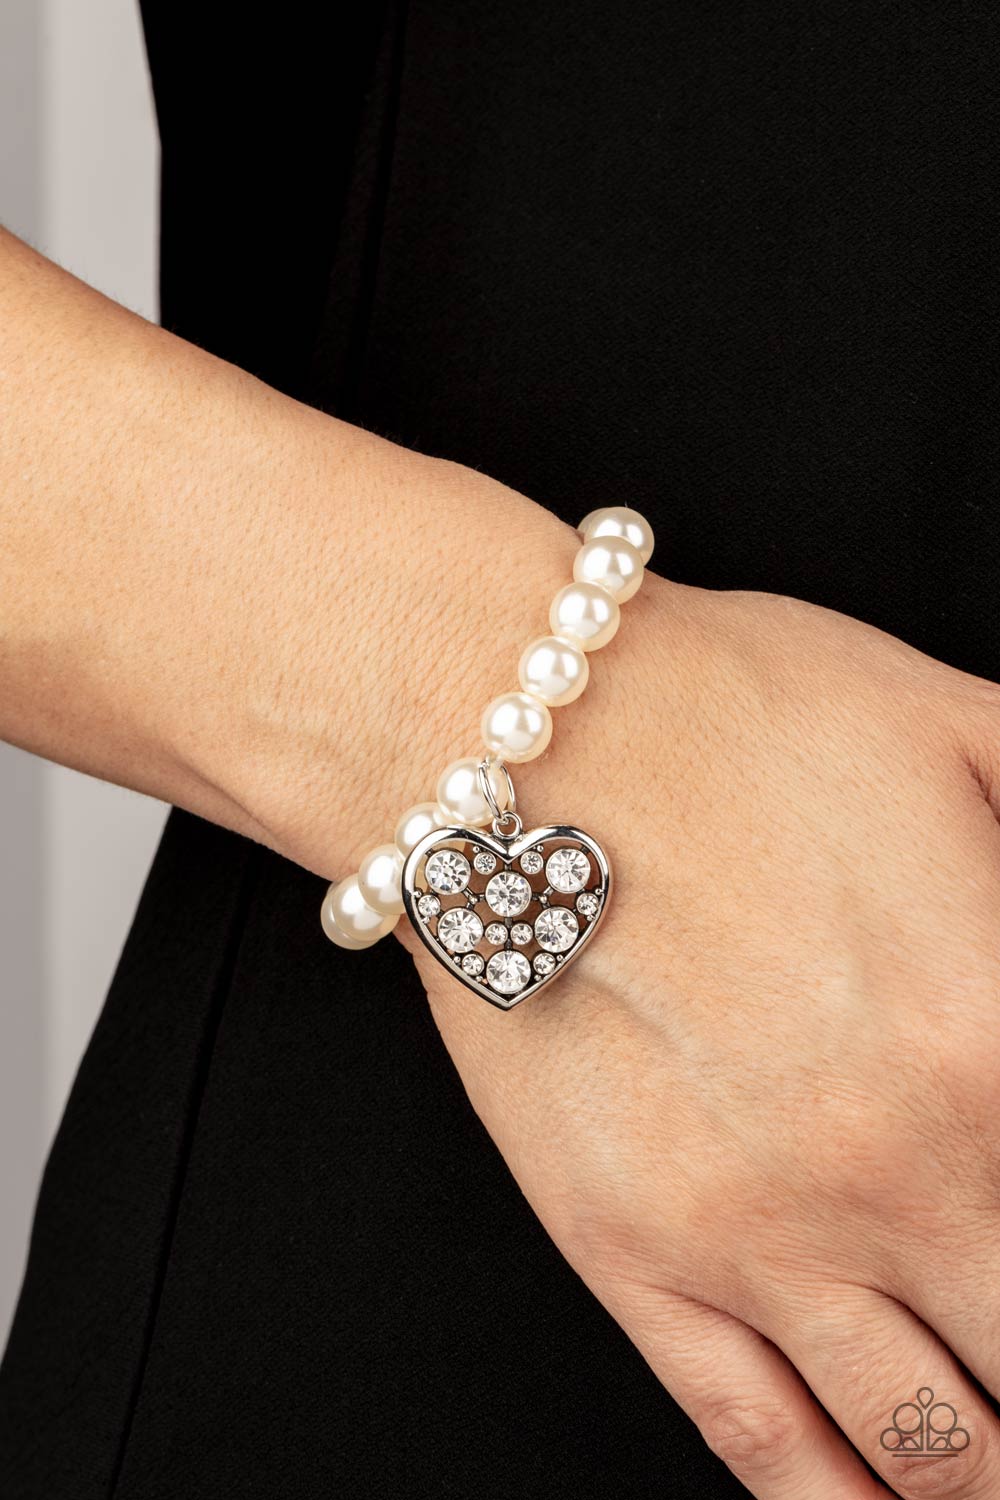 Paparazzi Cutely Crushing - White - Bracelet - $5 Jewelry with Ashley Swint